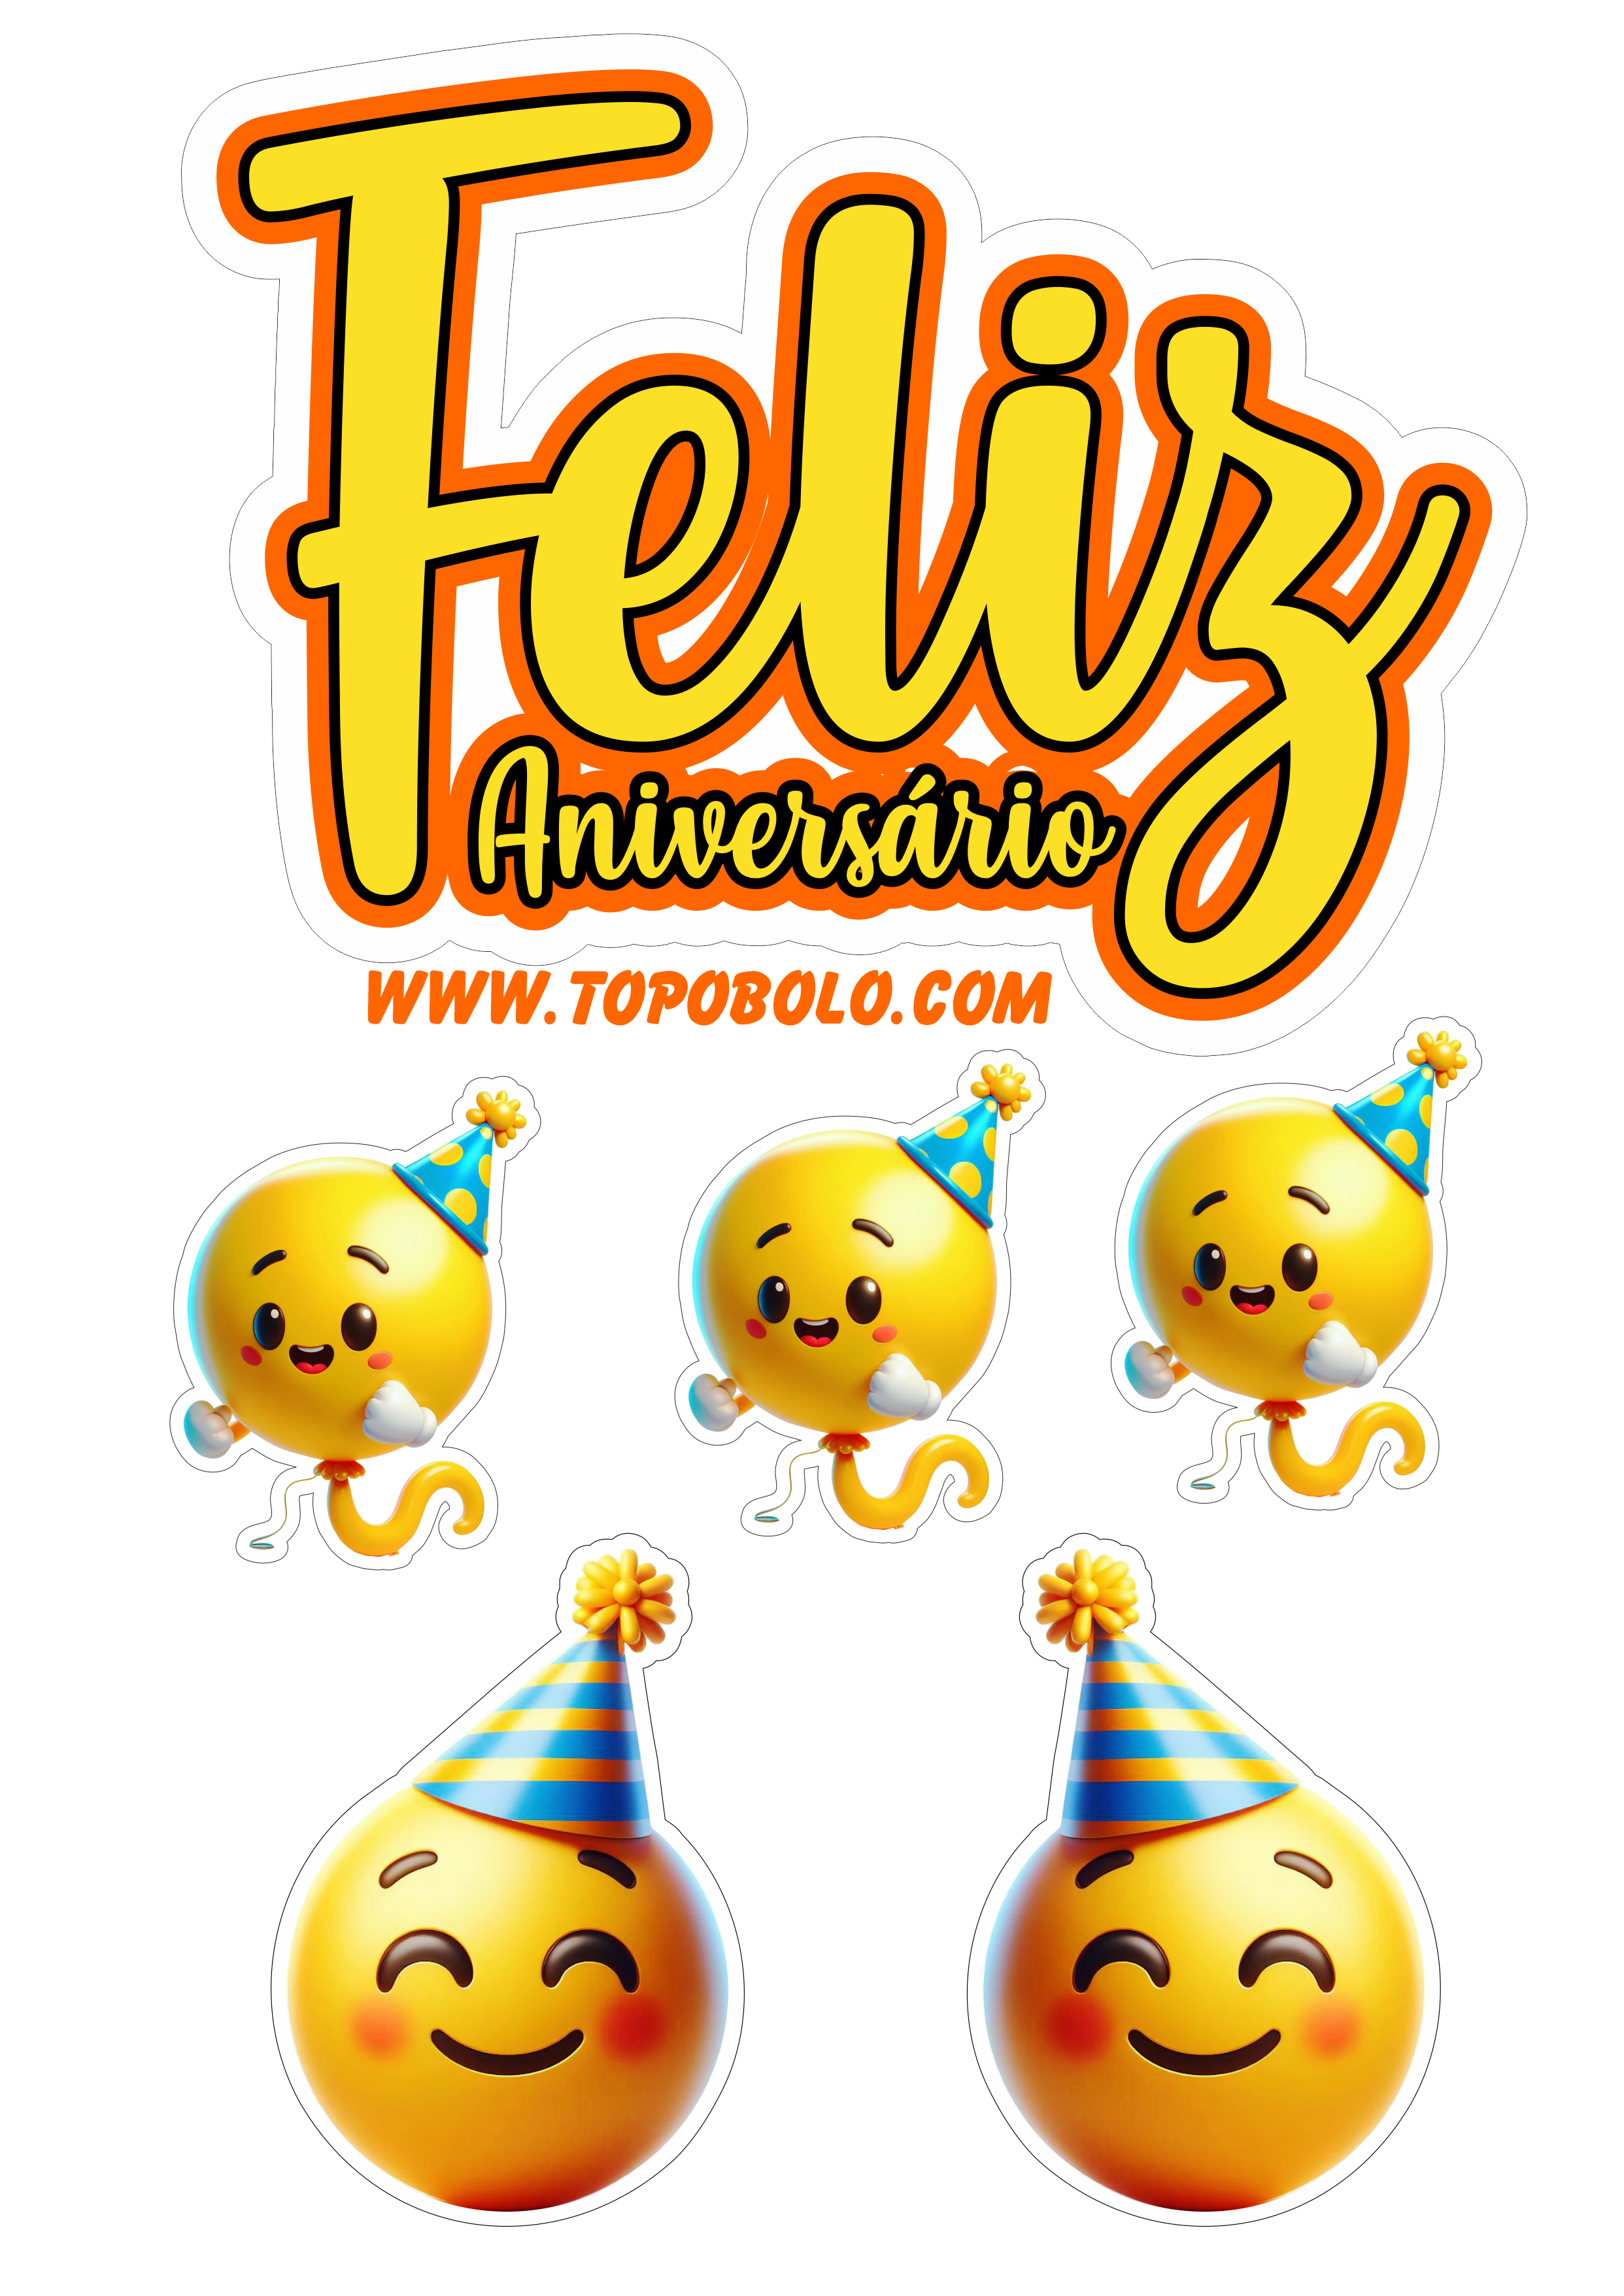 Topo de bolo feliz aniversário emojis engraçados fazendo a nossa festa png